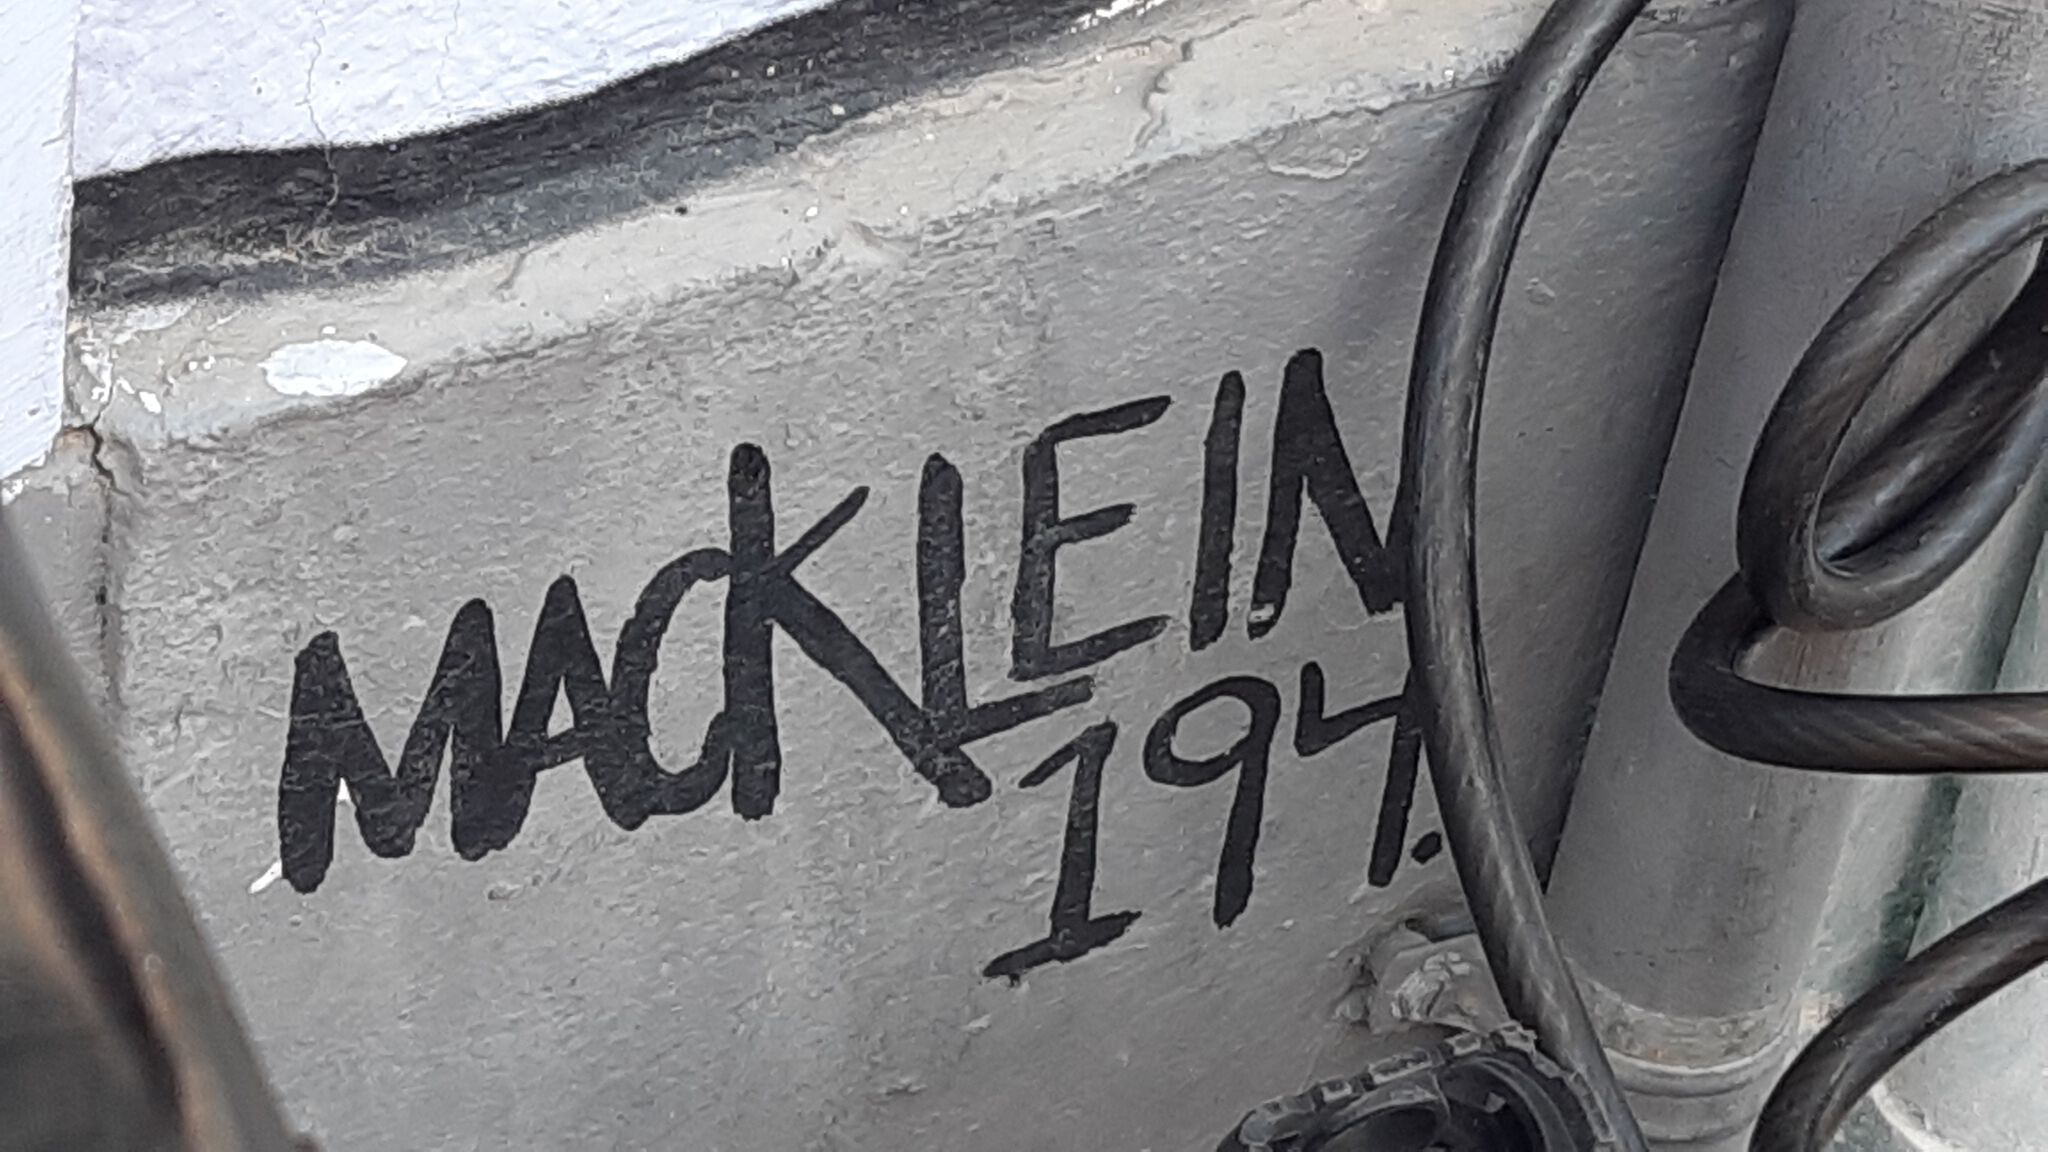 Macklein 194&mdash;Untitled